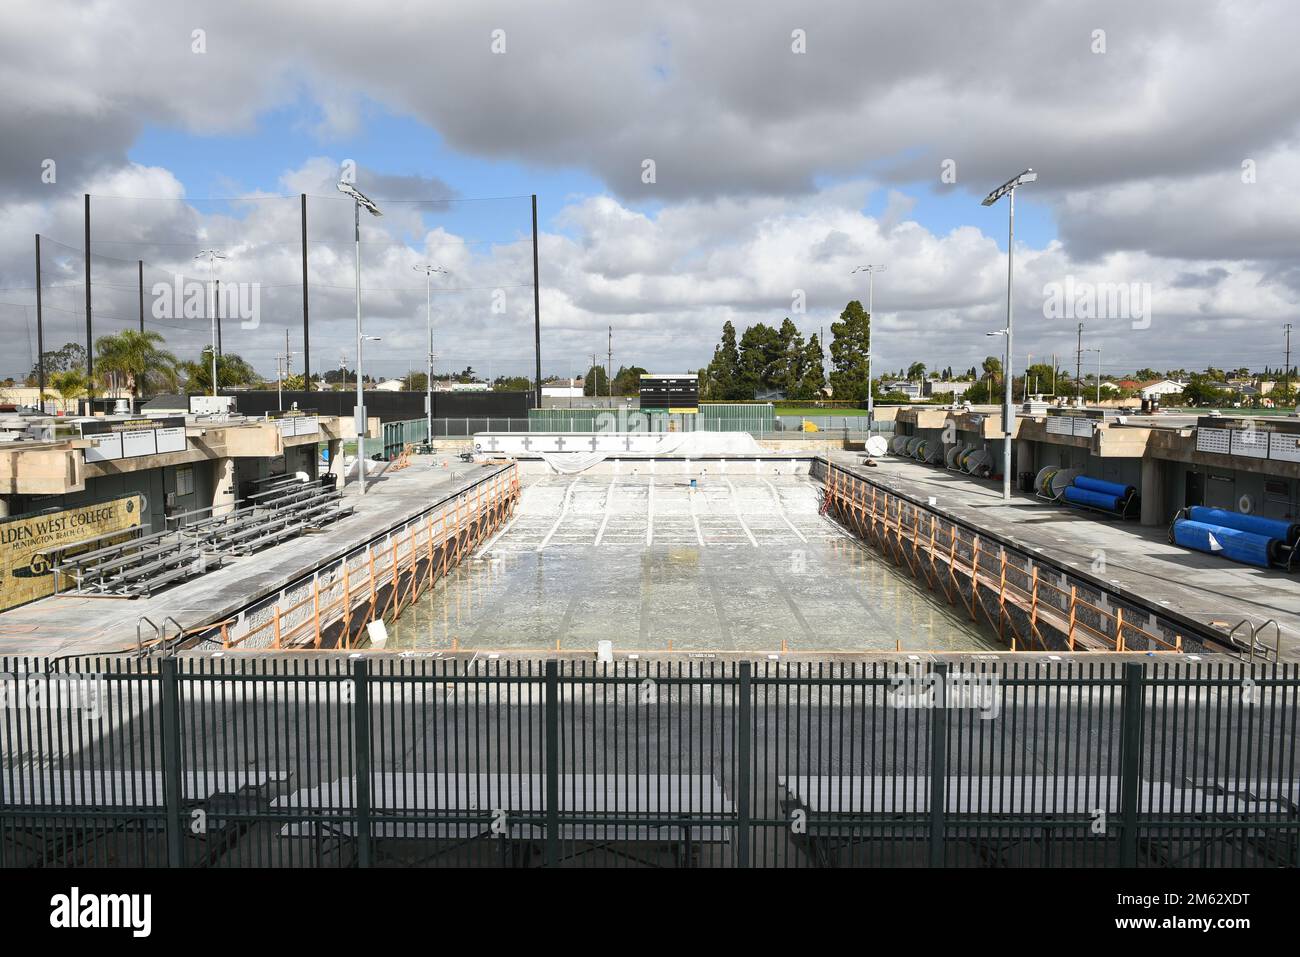 HUNTINGTON BEACH, KALIFORNIEN - 01. JANUAR 2023: Das Aquatic Center auf dem Campus des Golden West College wird gerade renoviert. Stockfoto